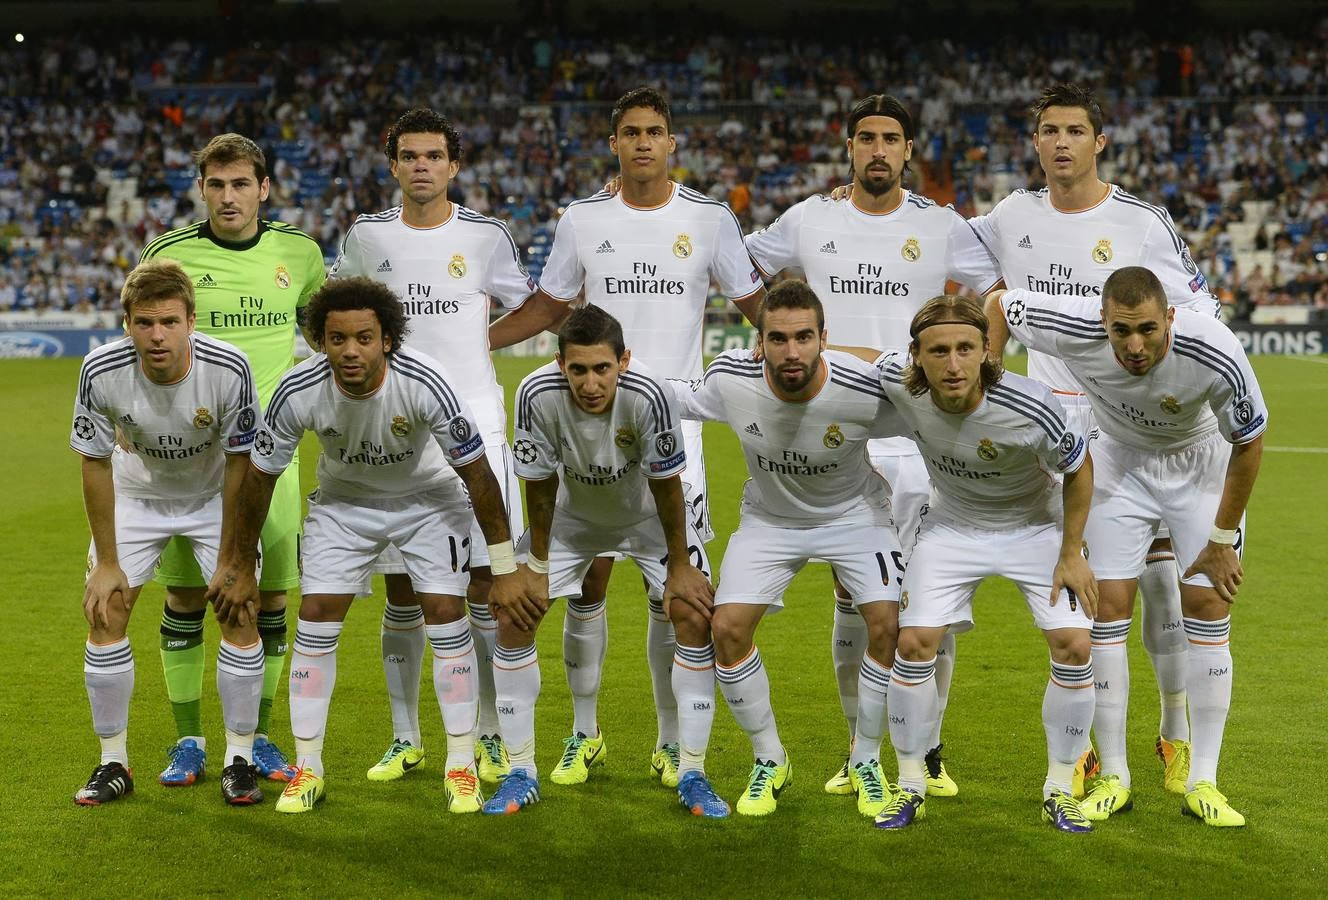 Fase de grupos: Real Madrid 4 - Copenhague 0 Blog del Real M